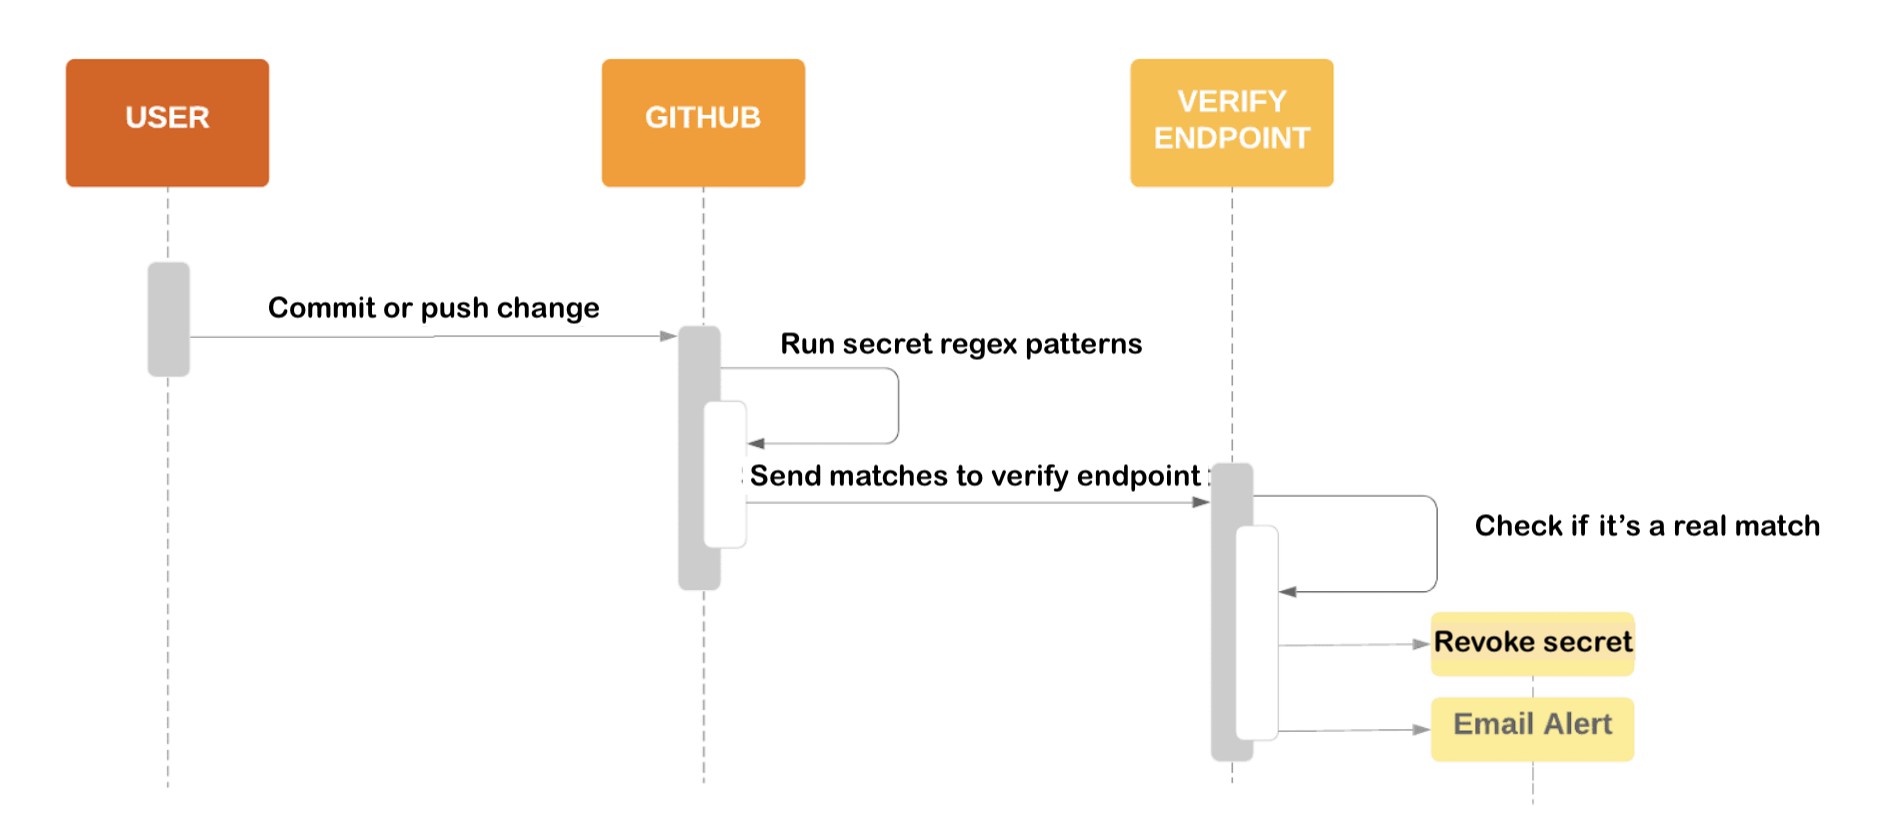 Схема, показывающая процесс сканирования секрета и отправки совпадений в конечную точку поставщика услуг.